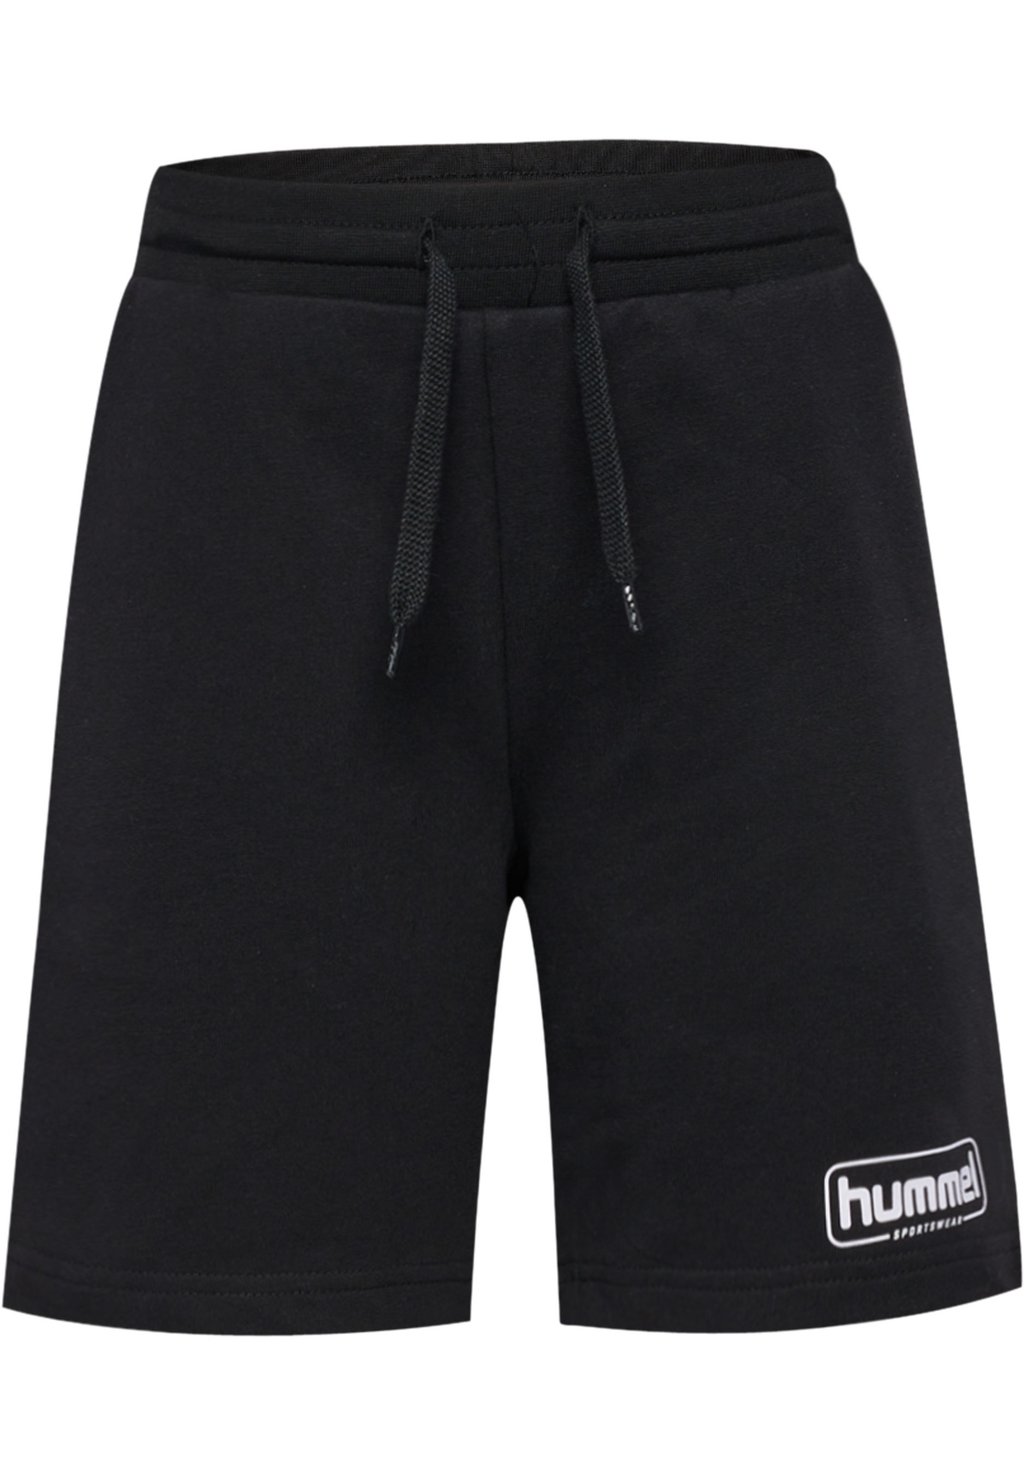 Короткие спортивные брюки BALLY Hummel, цвет black